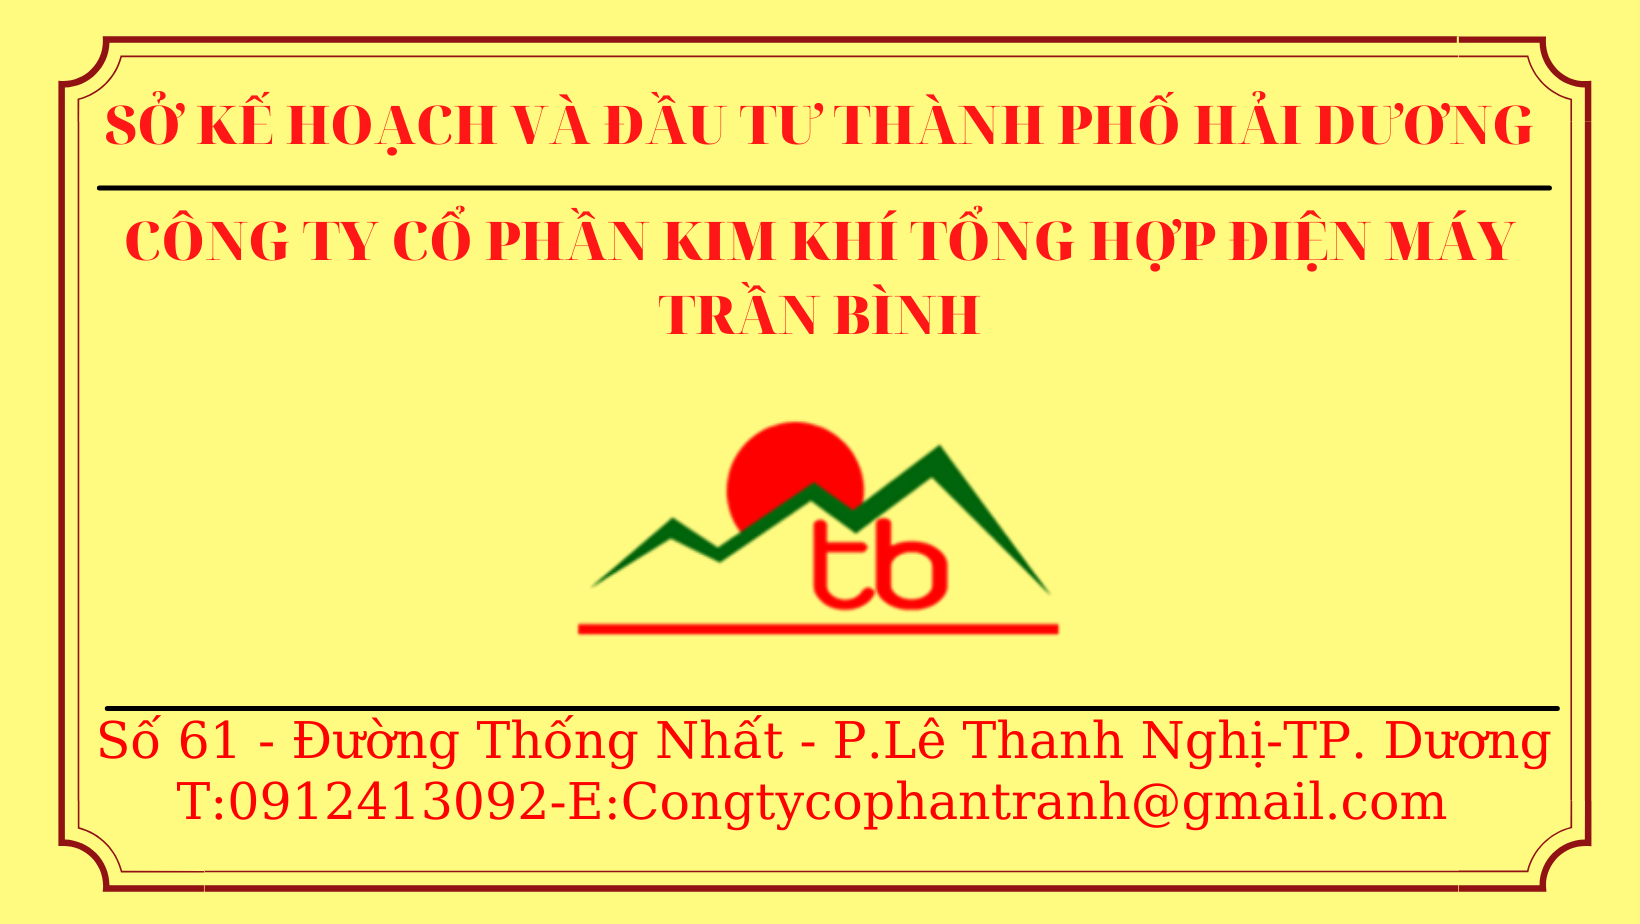 Trần Bình Company